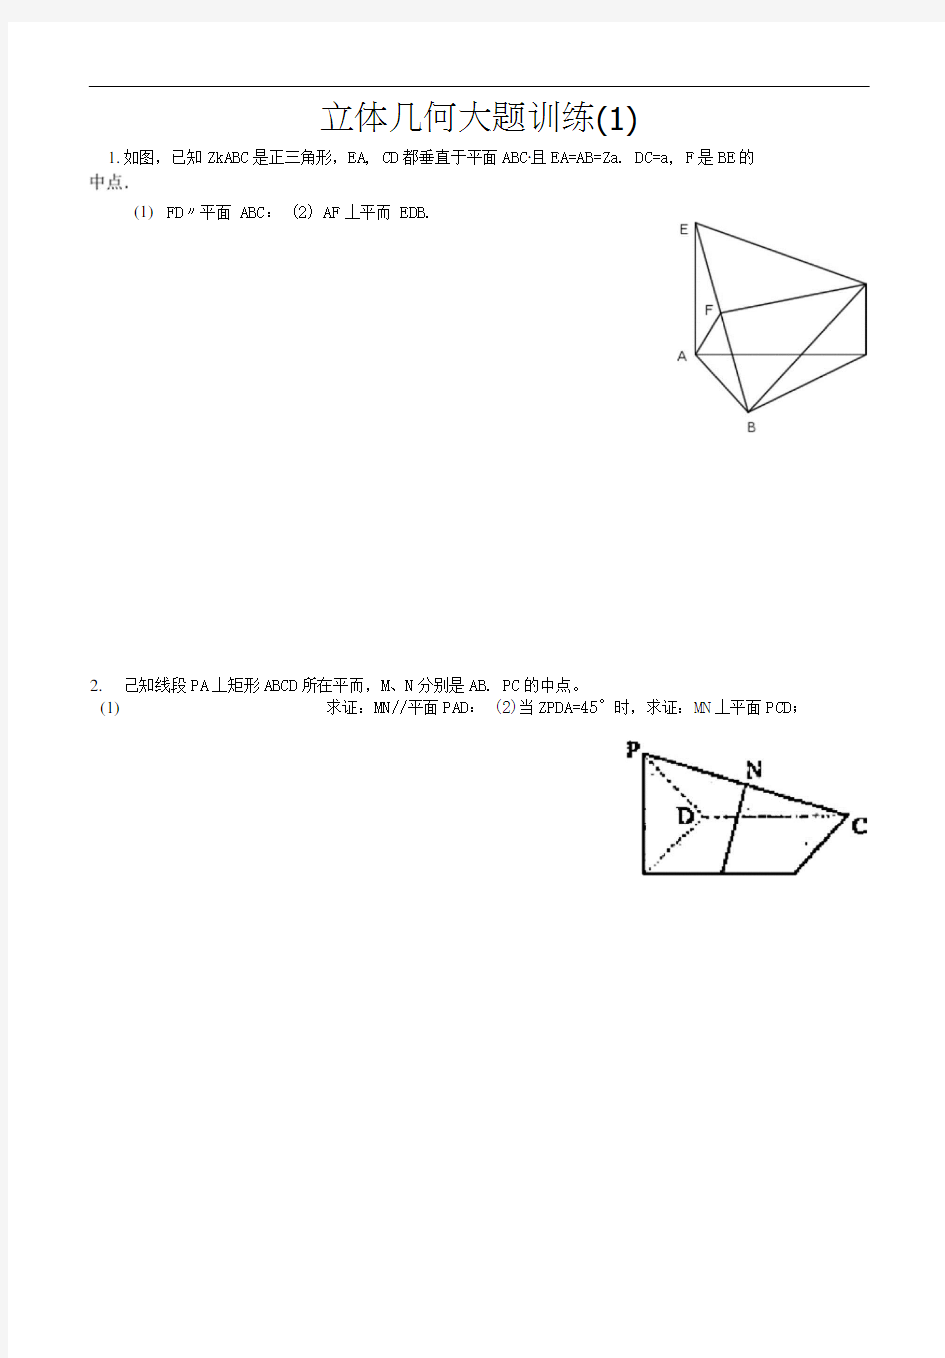 立体几何经典大题(各个类型的典型题目)